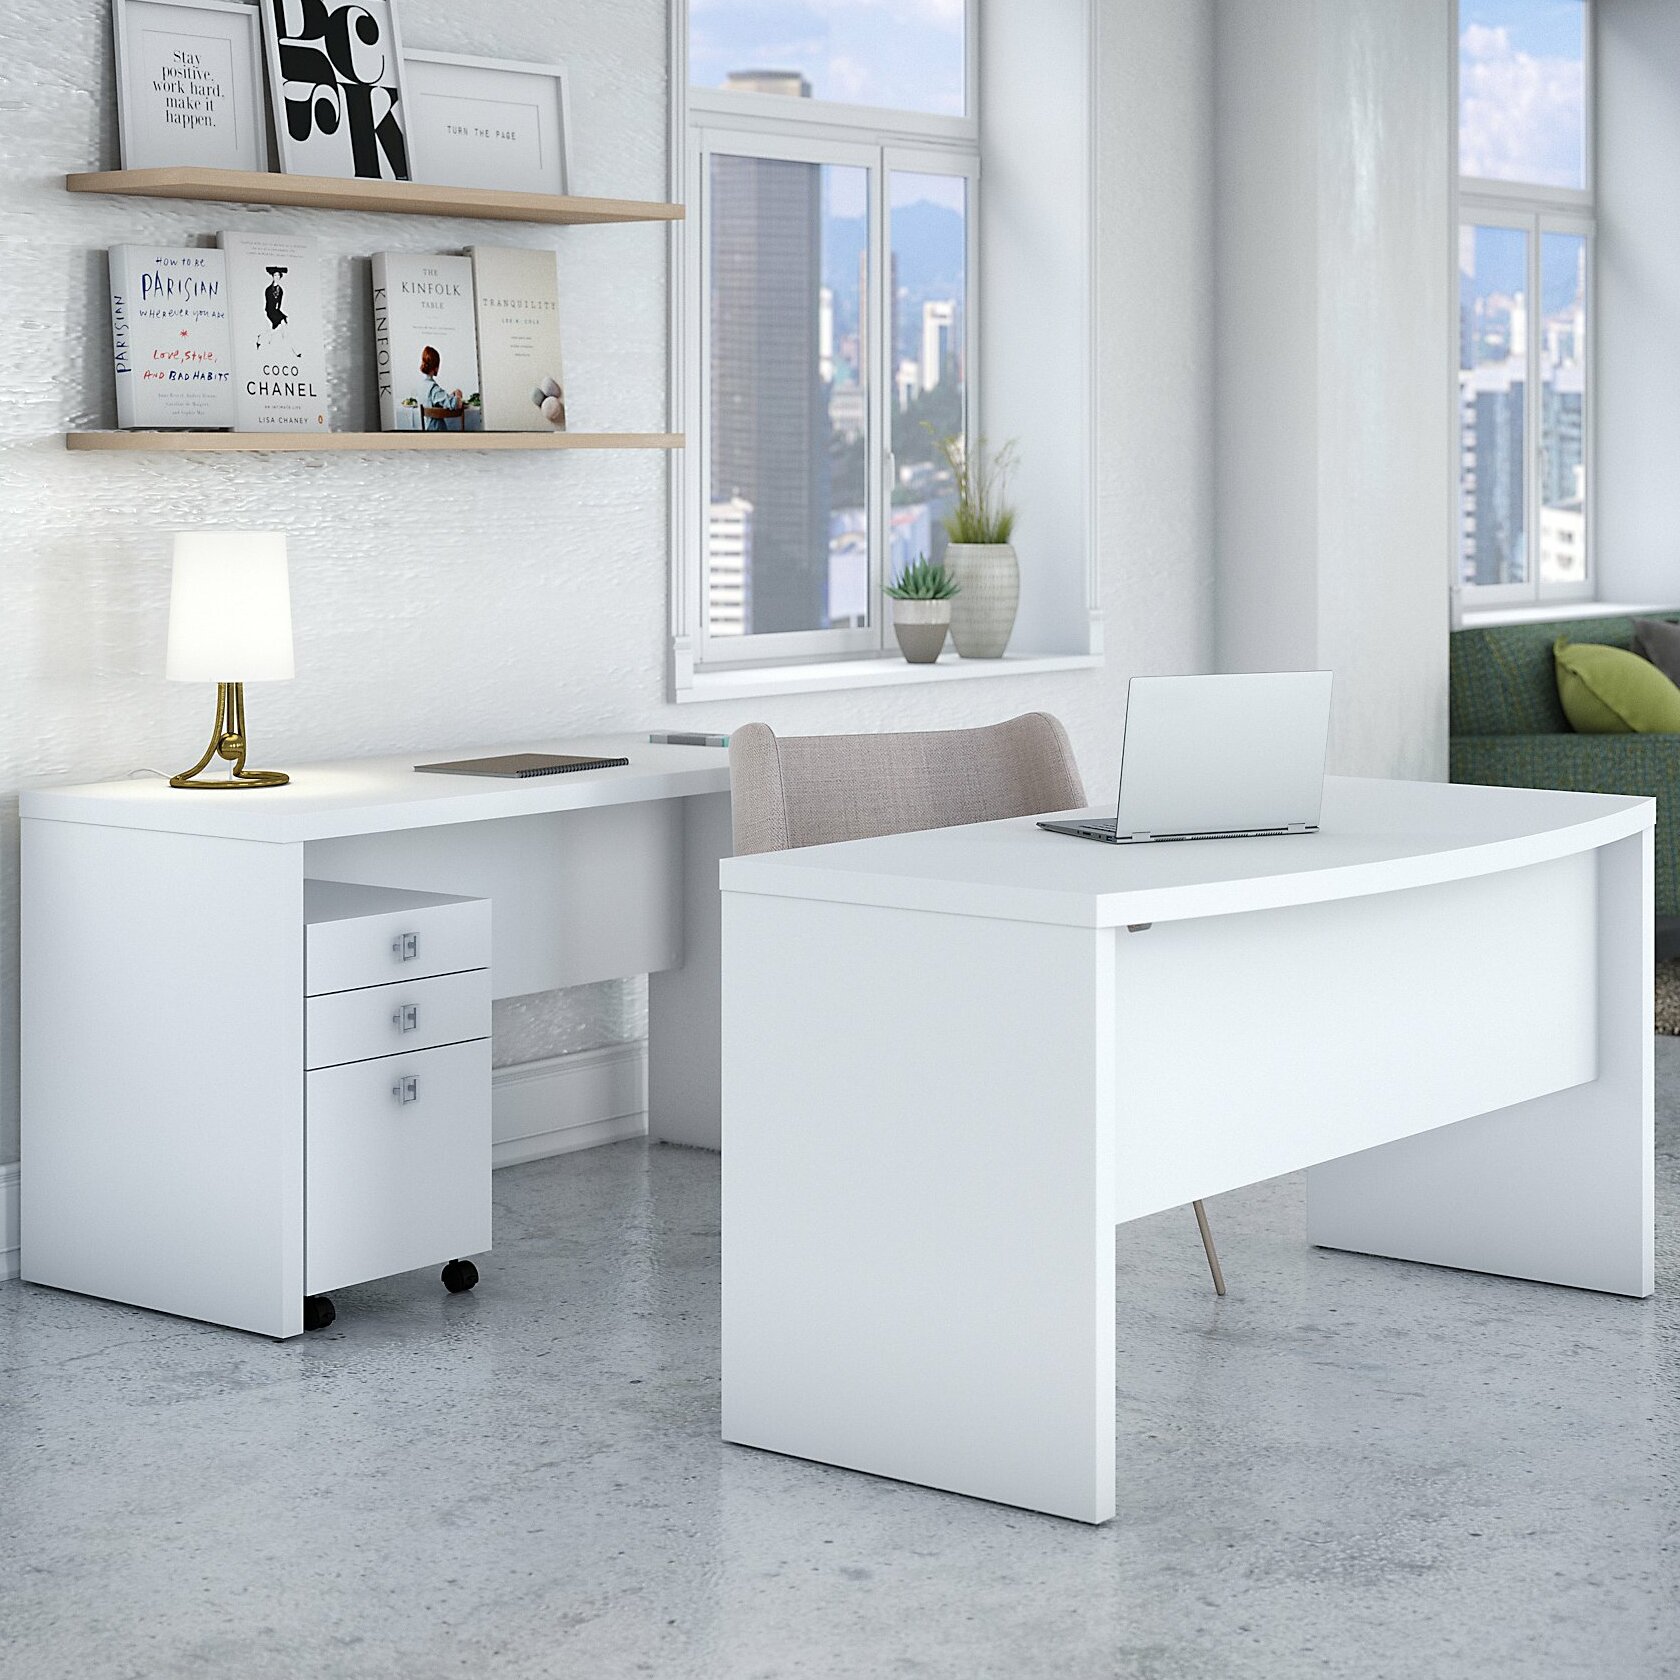 Desk Key K067 Knoll Office Furniture File Cabinet 